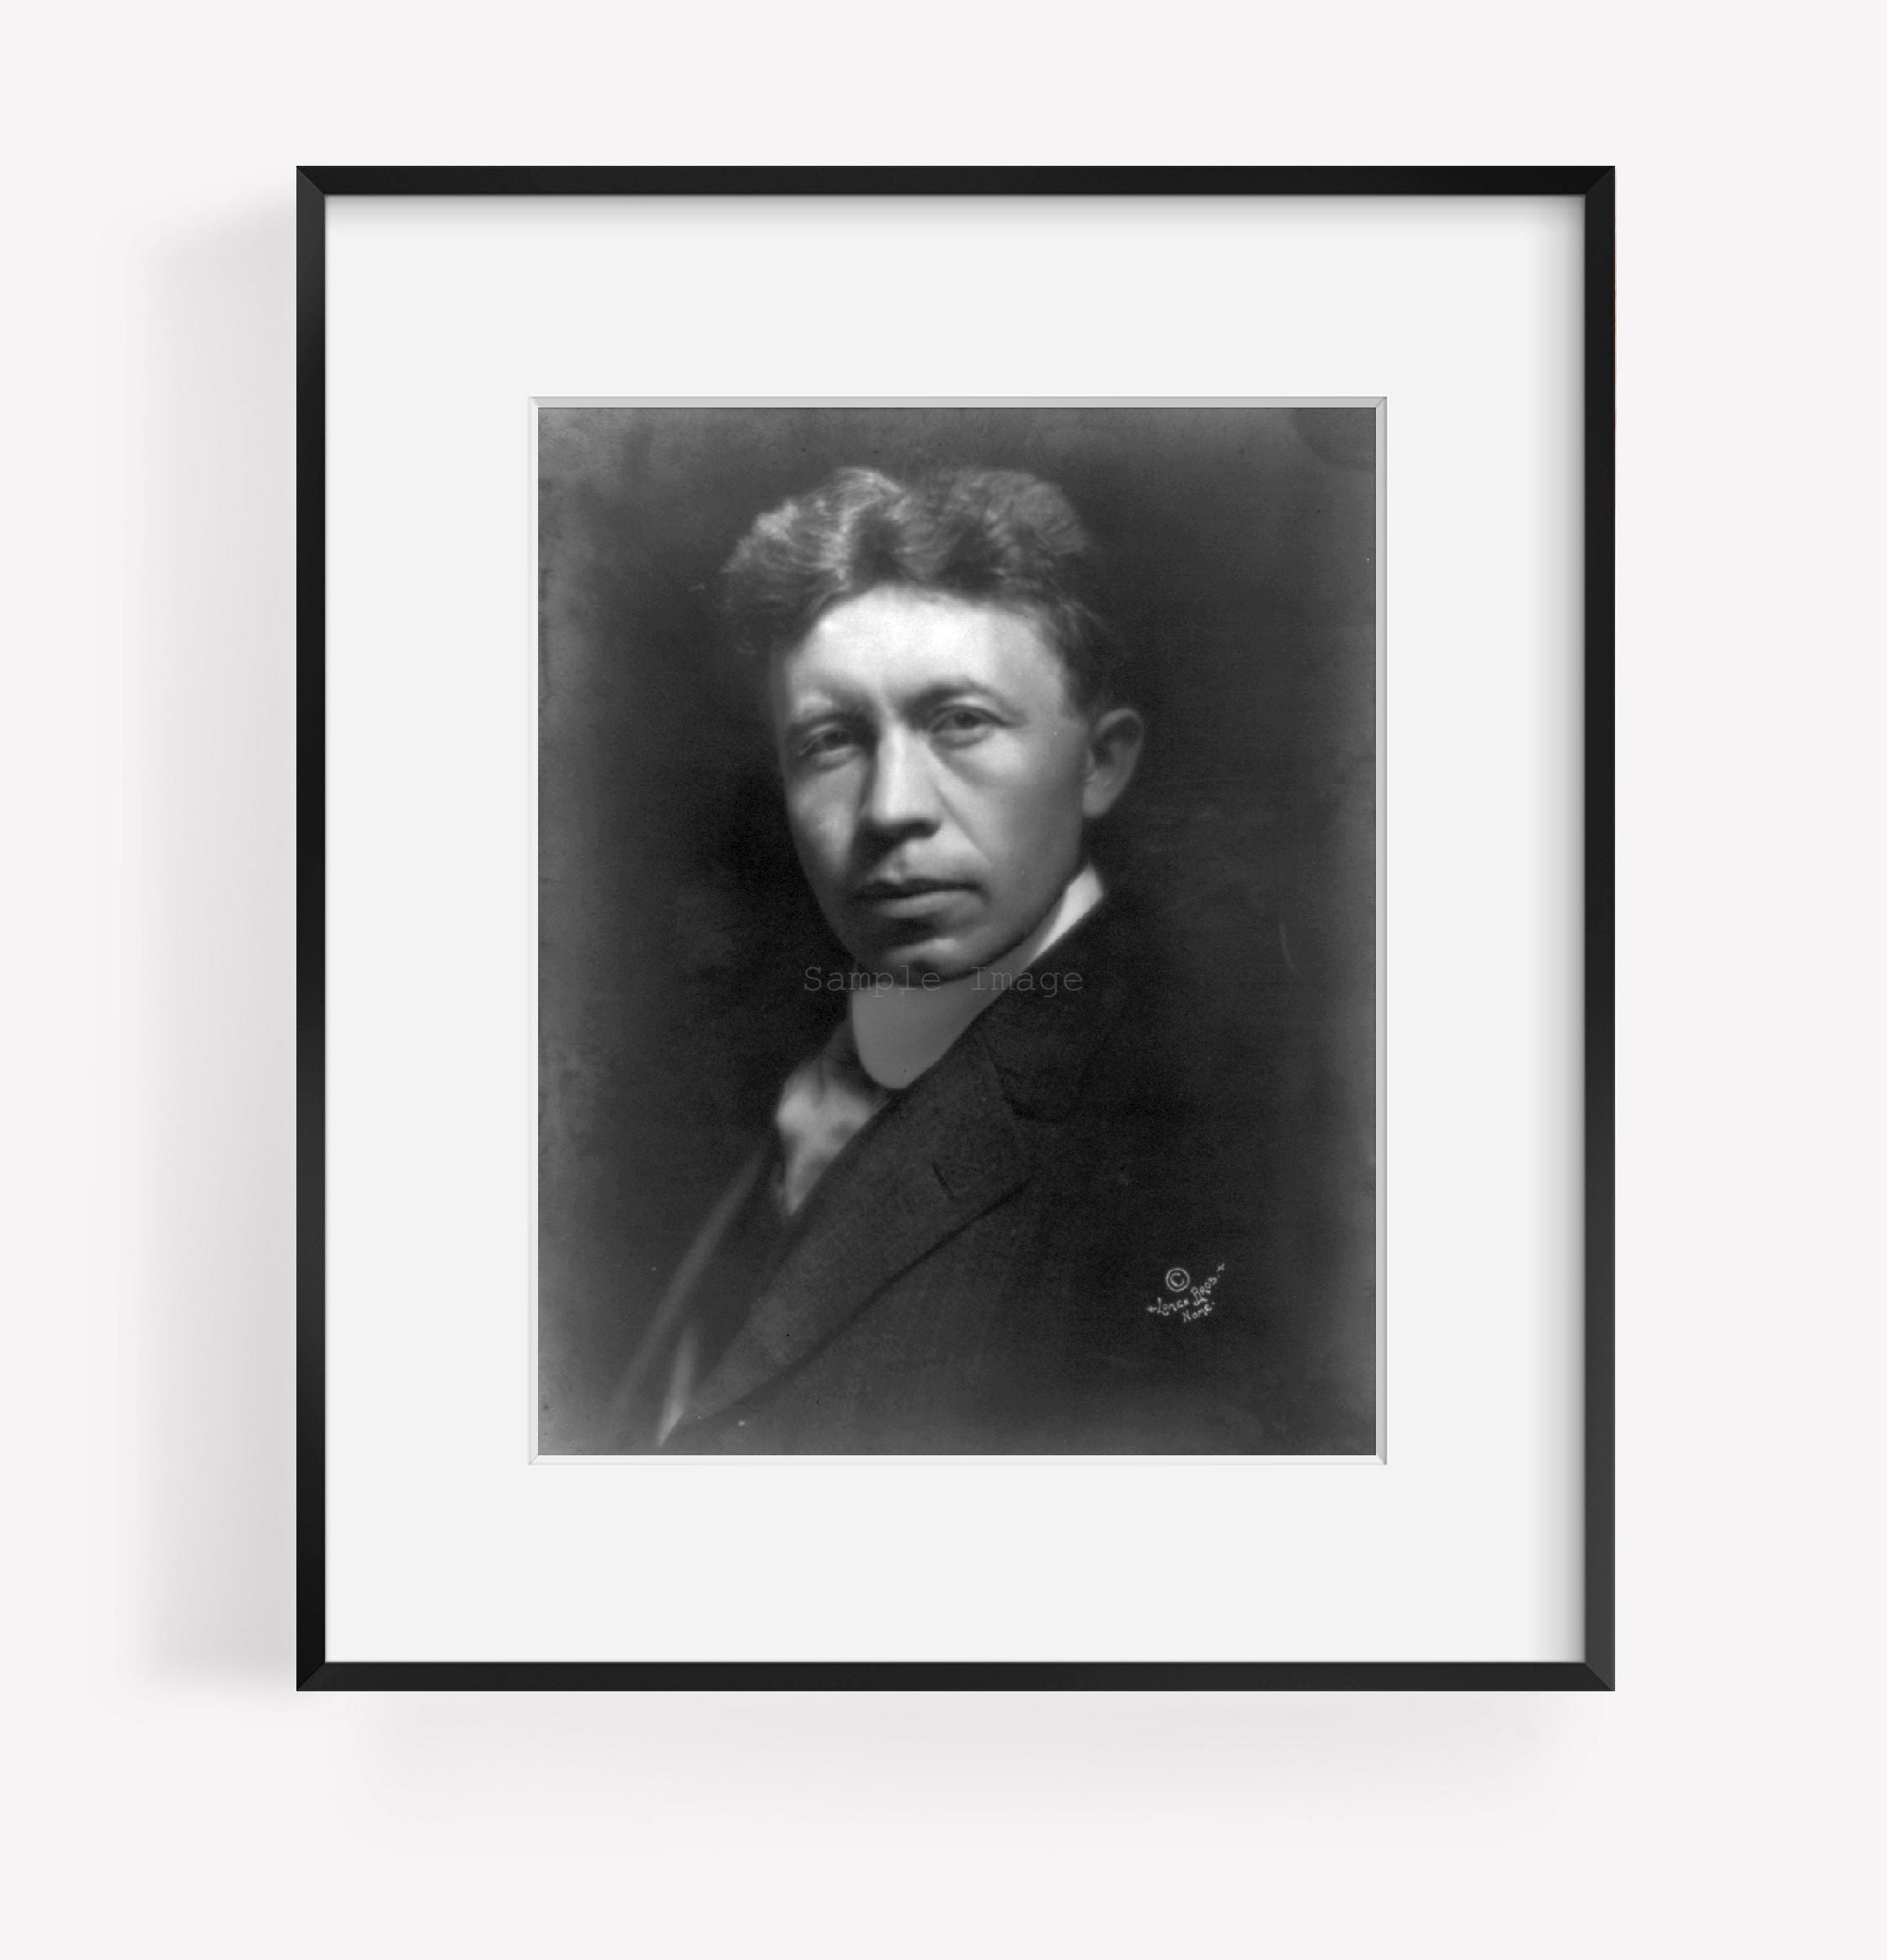 c1913 photograph of Vilhjalmar Stefanssen, head-and-shoulders portrait, facing l